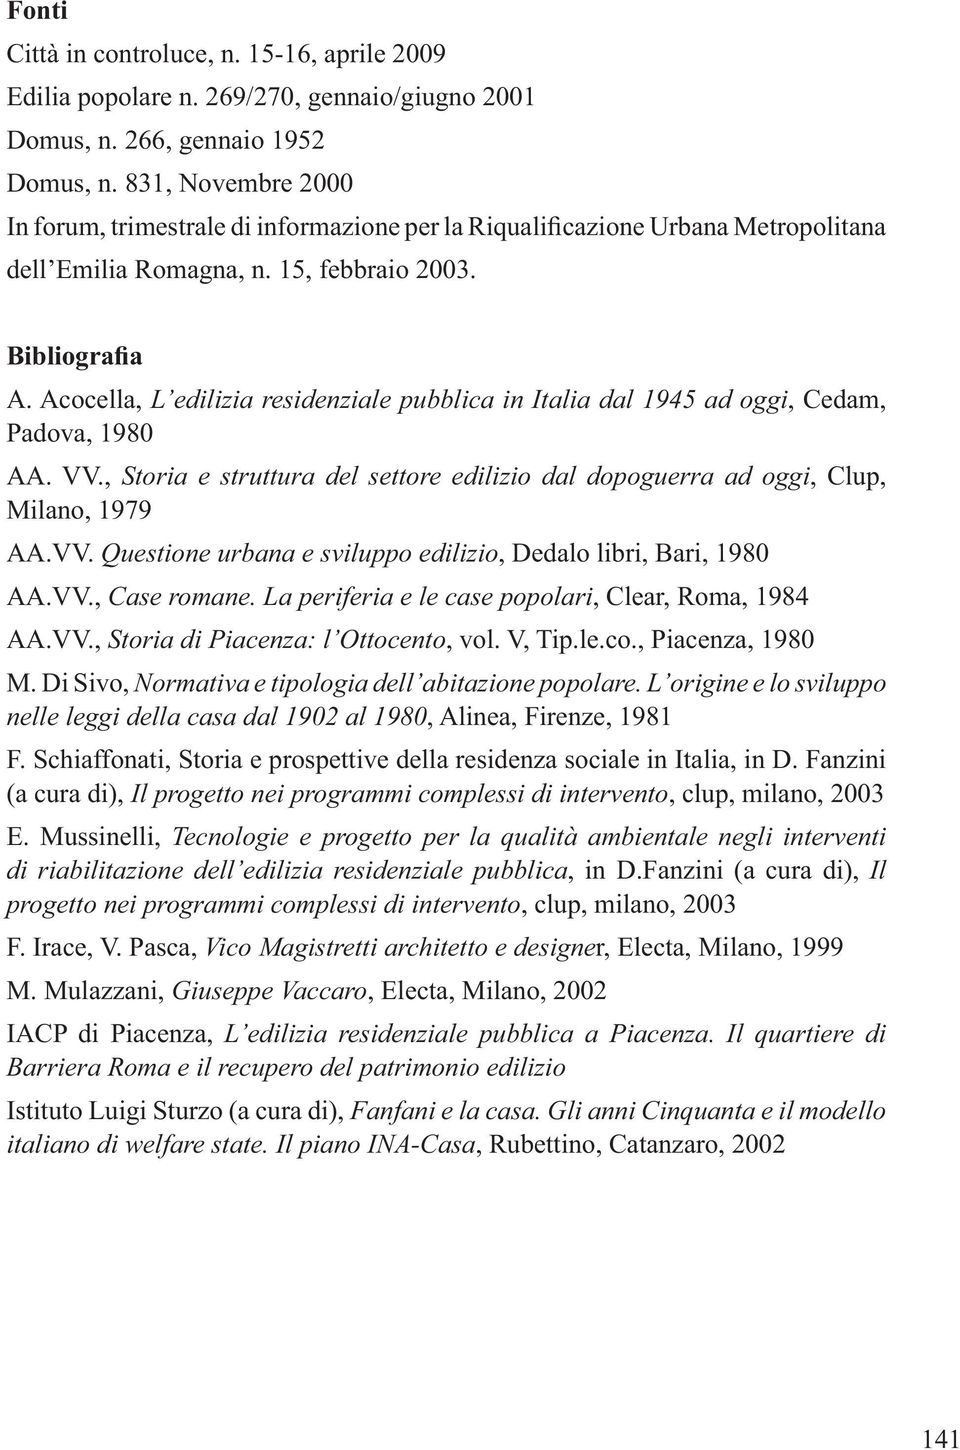 L origine e lo sviluppo nelle leggi della casa dal 1902 al 1980 F. Schiaffonati, Storia e prospettive della residenza sociale in Italia, in D.